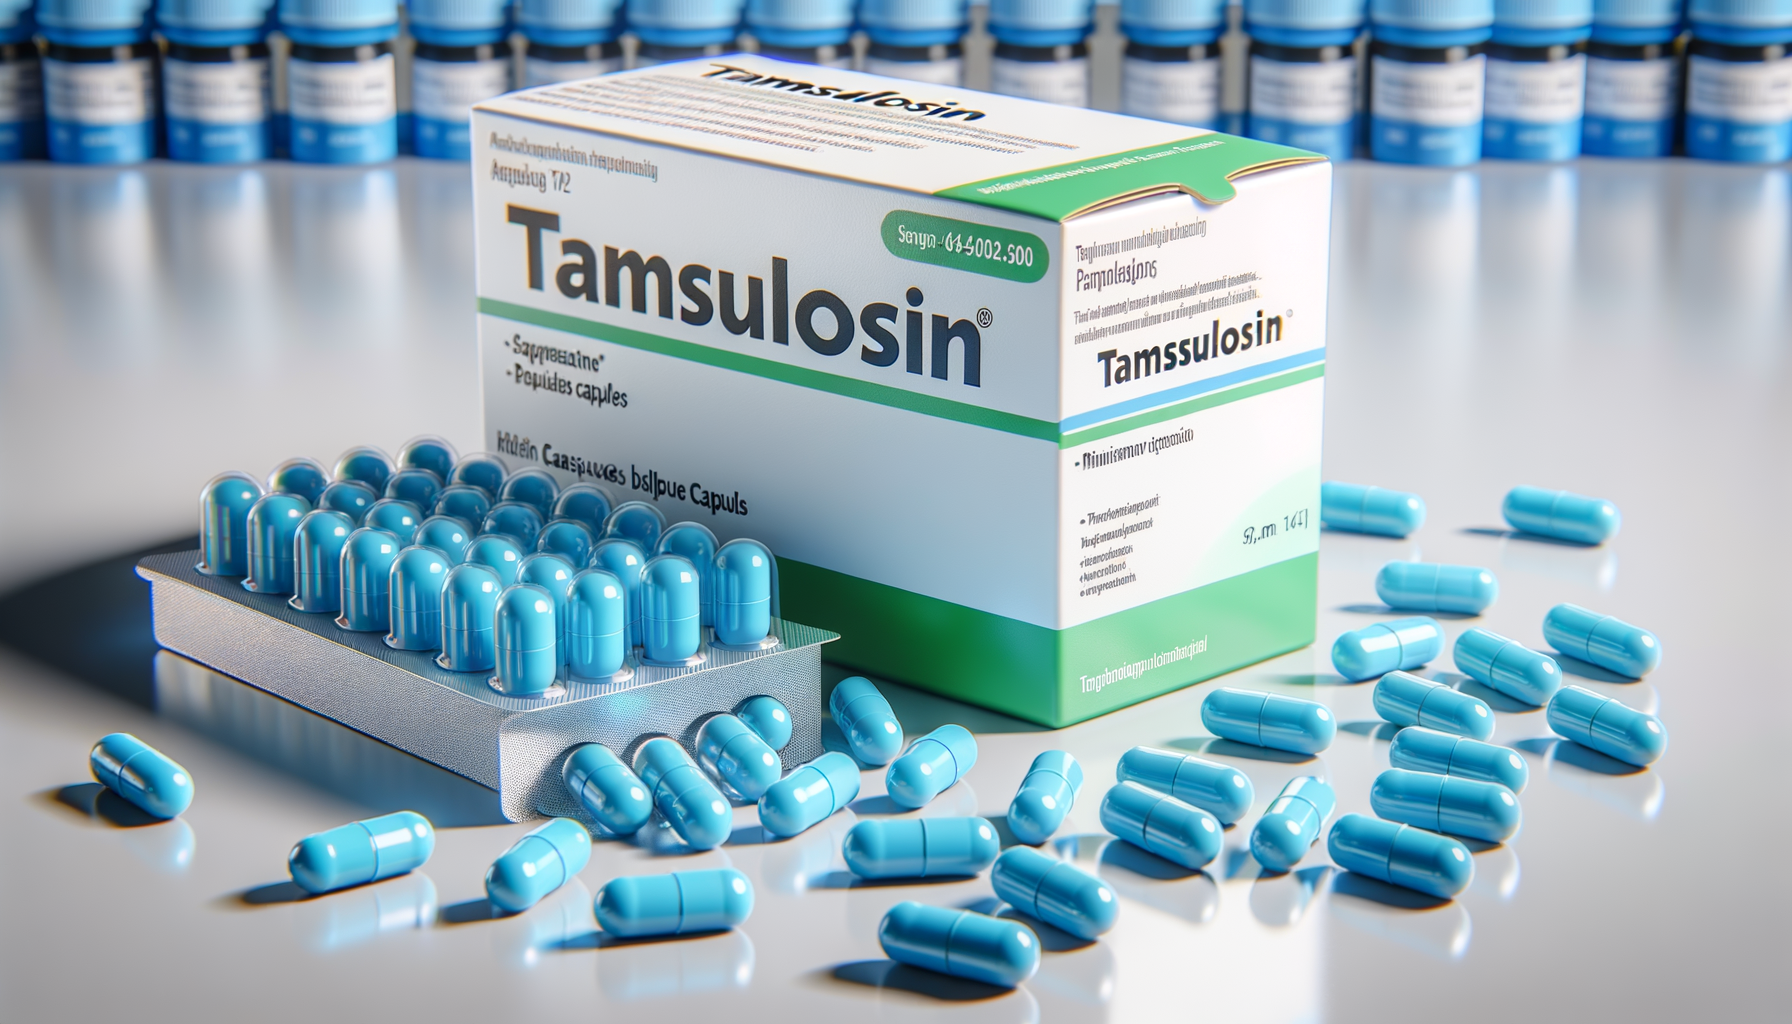 Quale farmaco contiene tamsulosina?